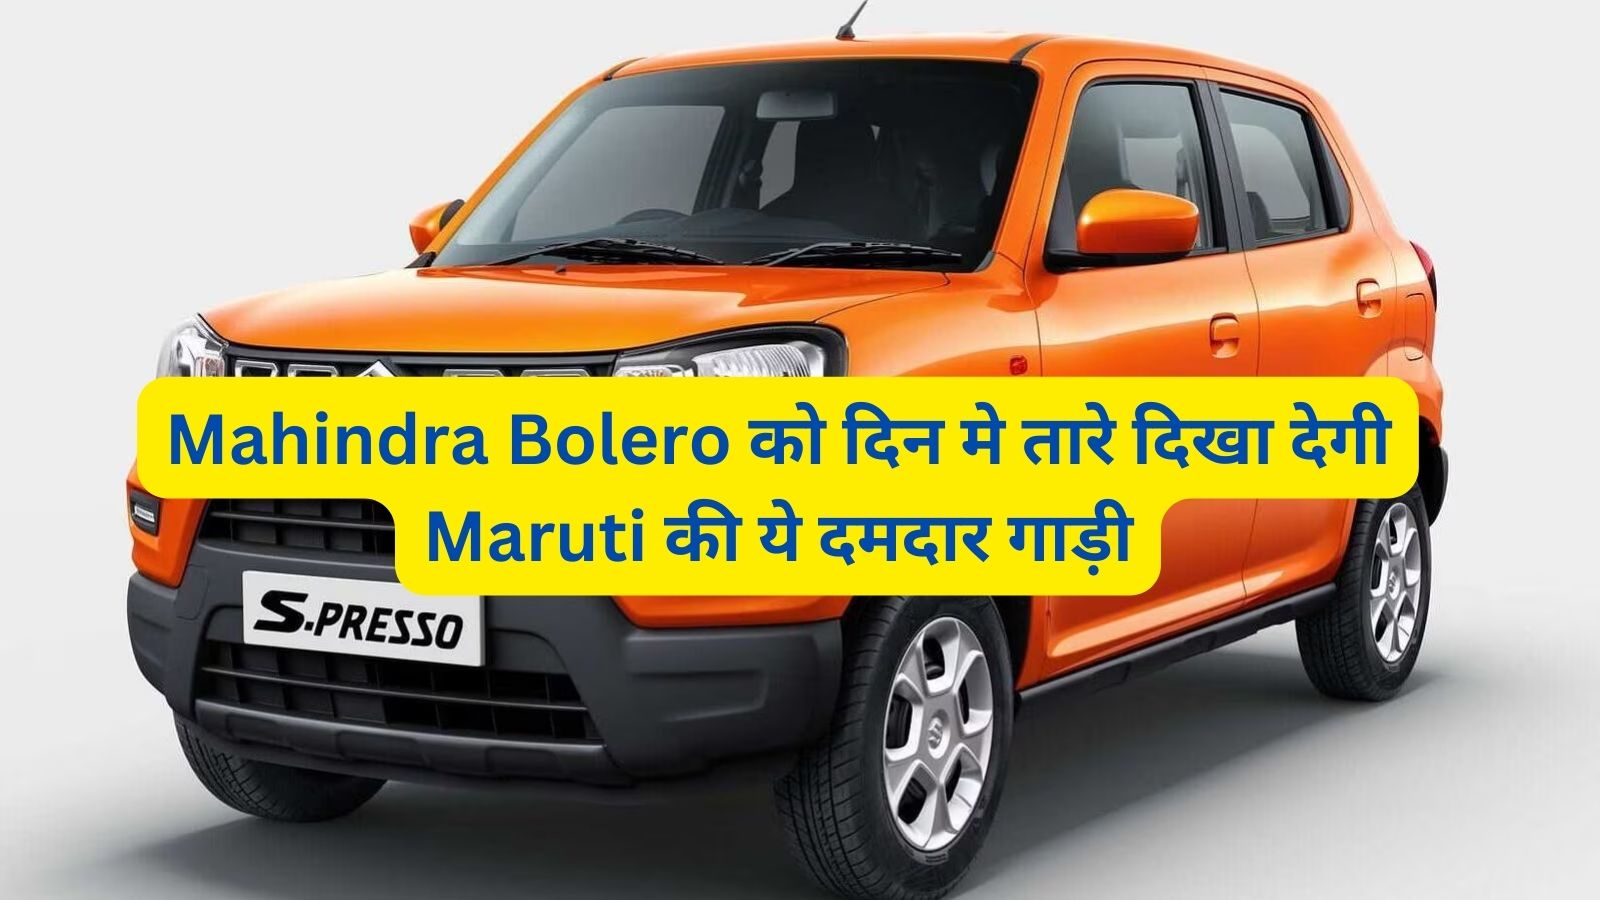 Maruti S-Presso: Mahindra Bolero को दिन मे तारे दिखा देगी Maruti की ये दमदार गाड़ी,जानिए इसके दमदार इंजन और माइलेज के बारे मे